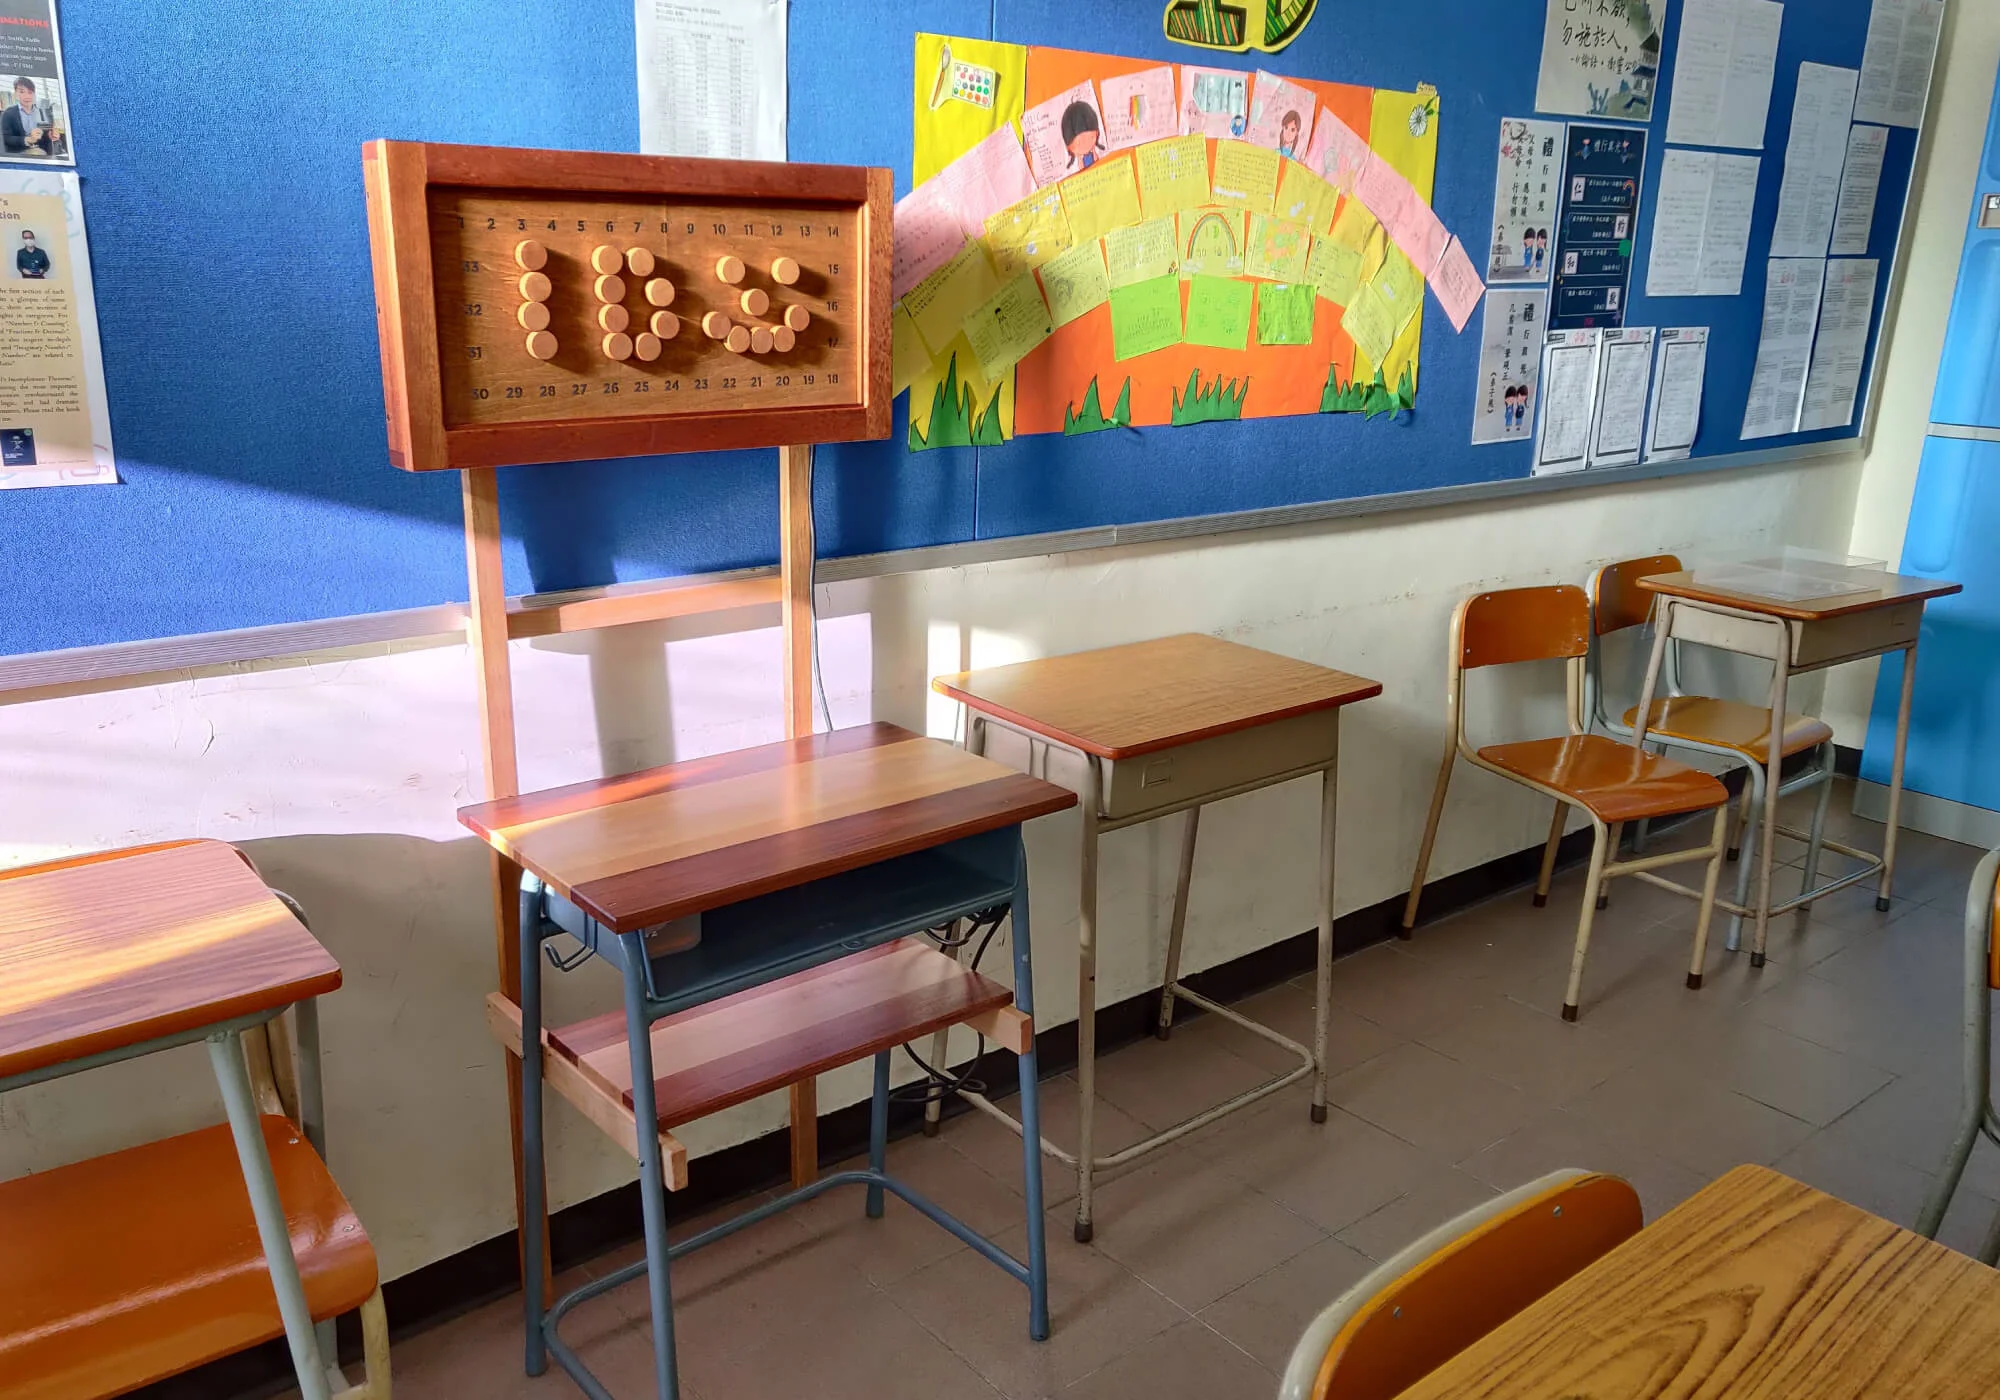 由普通學生桌子改裝而成的「交齊功課亮燈桌」，可標示收功課進度及暫存功課簿，現於1D課室為同學服務。